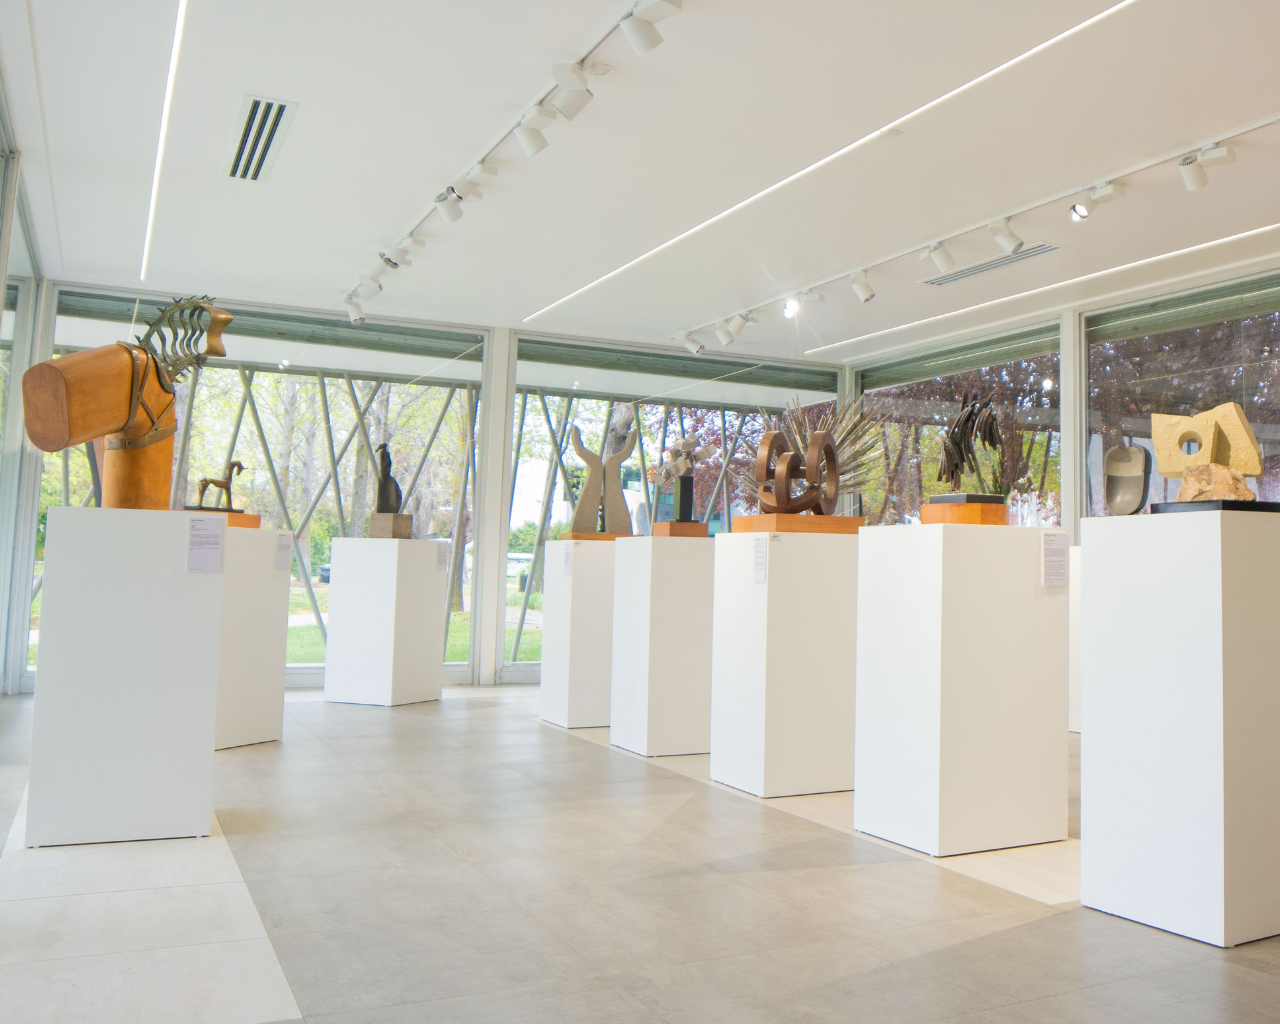 Universidad inaugura Galería de Esculturas en Pequeño Formato